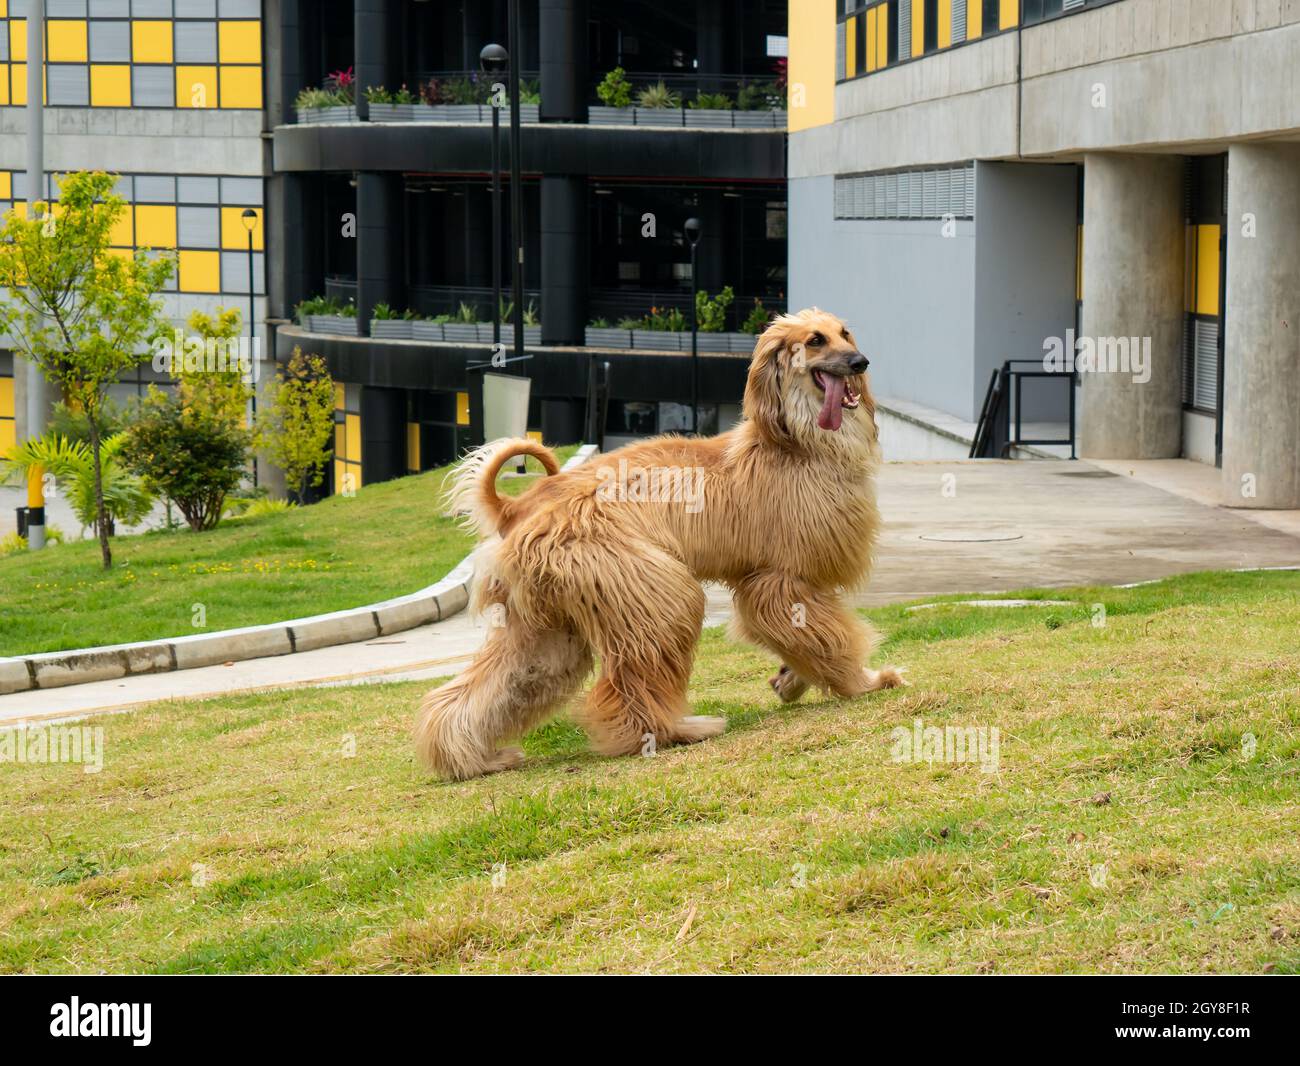 Ein Hund mit einem dicken, feinen, silkigen Mantel und einem Schwanz mit einer ringförmigen Locke am Ende, bekannt als der afghanische Hund, in einem Garten in Medellin, Kolumbien Stockfoto